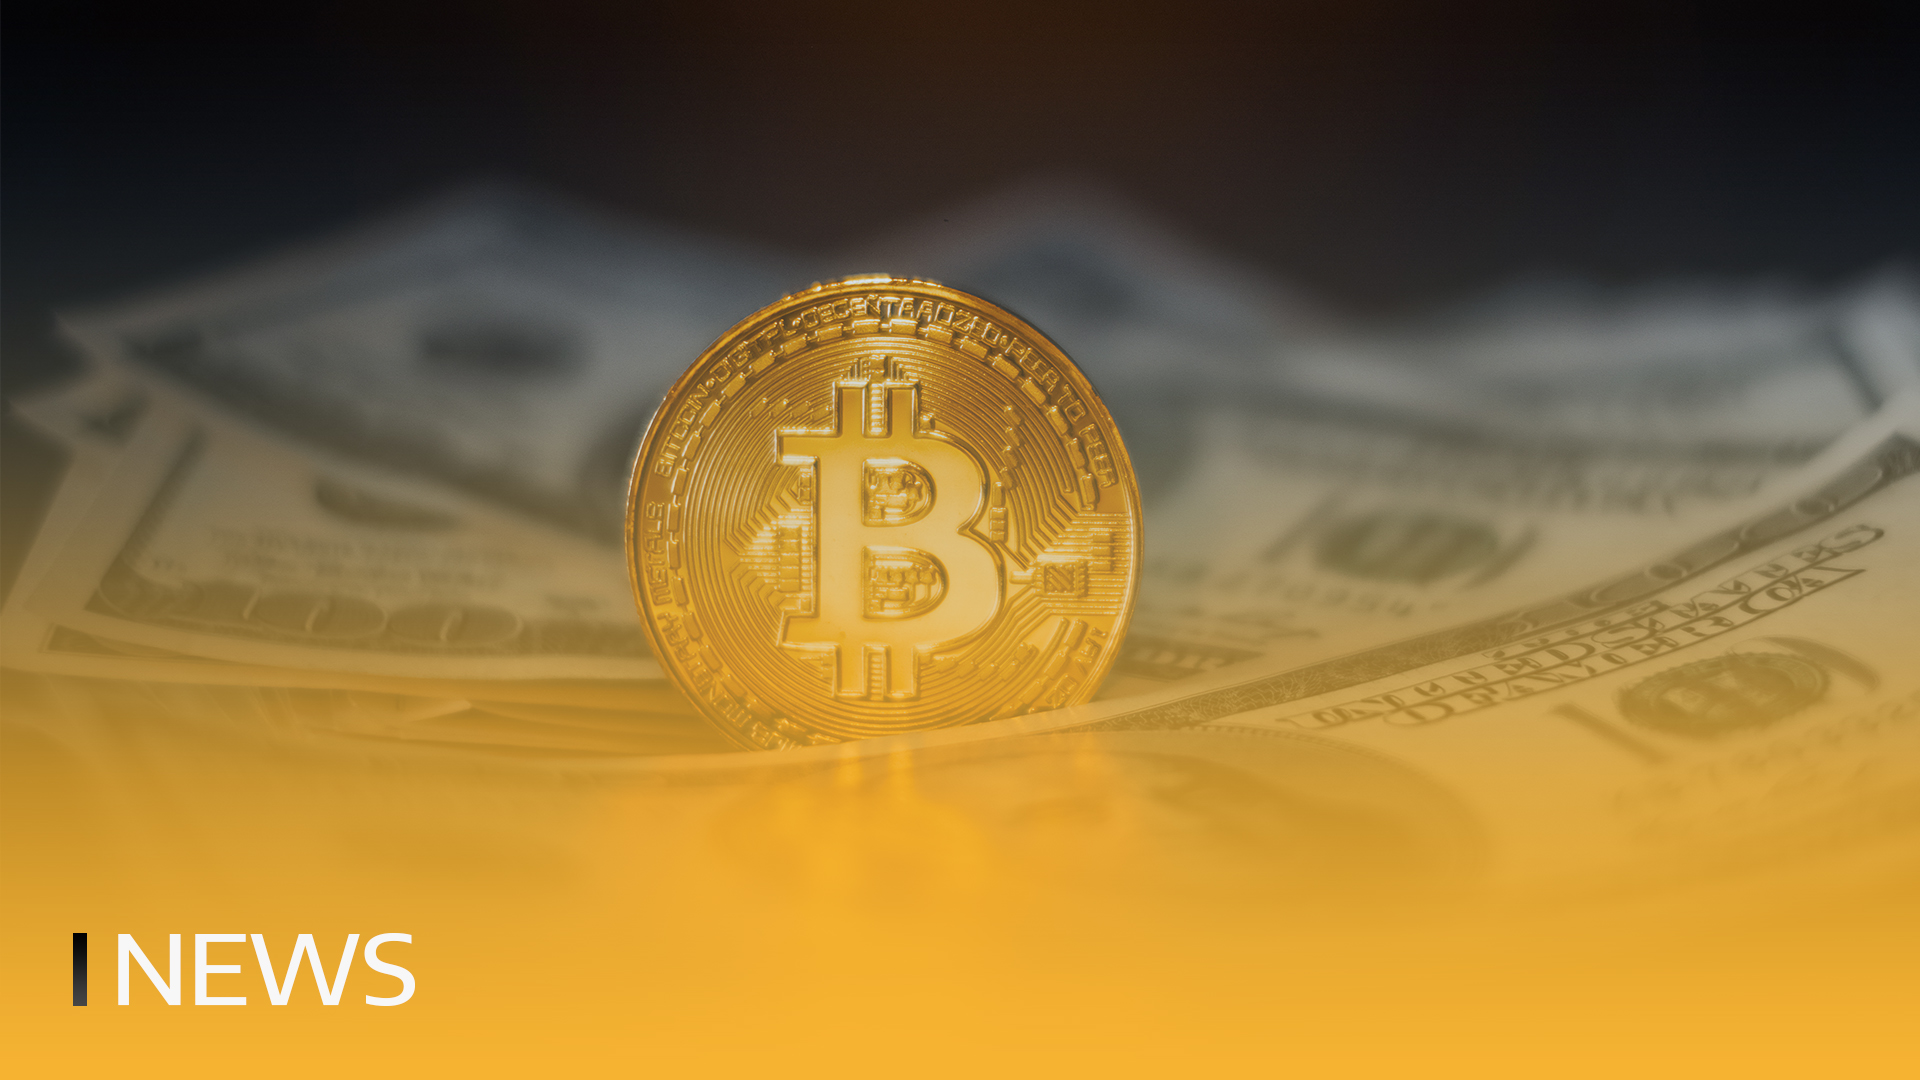 Hermetica je predstavila prvi sintetični dolar, podprt z bitcoini